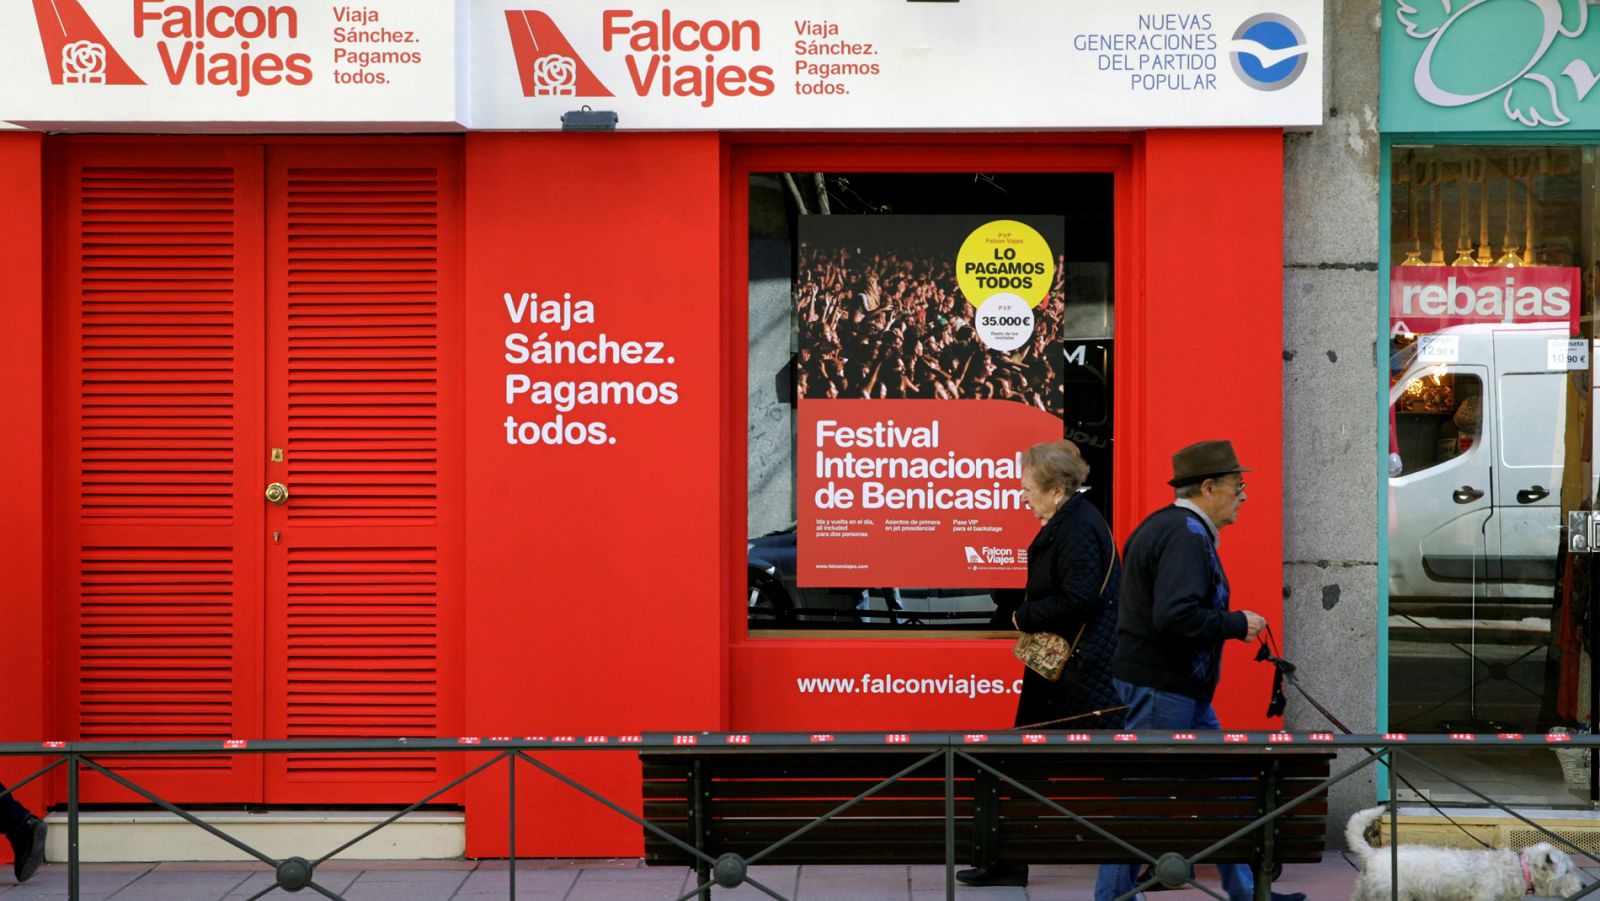 Primer día de campaña electoral: el PSOE anuncia que denunciará al PP por su vídeo del 'Falcon viajes' 